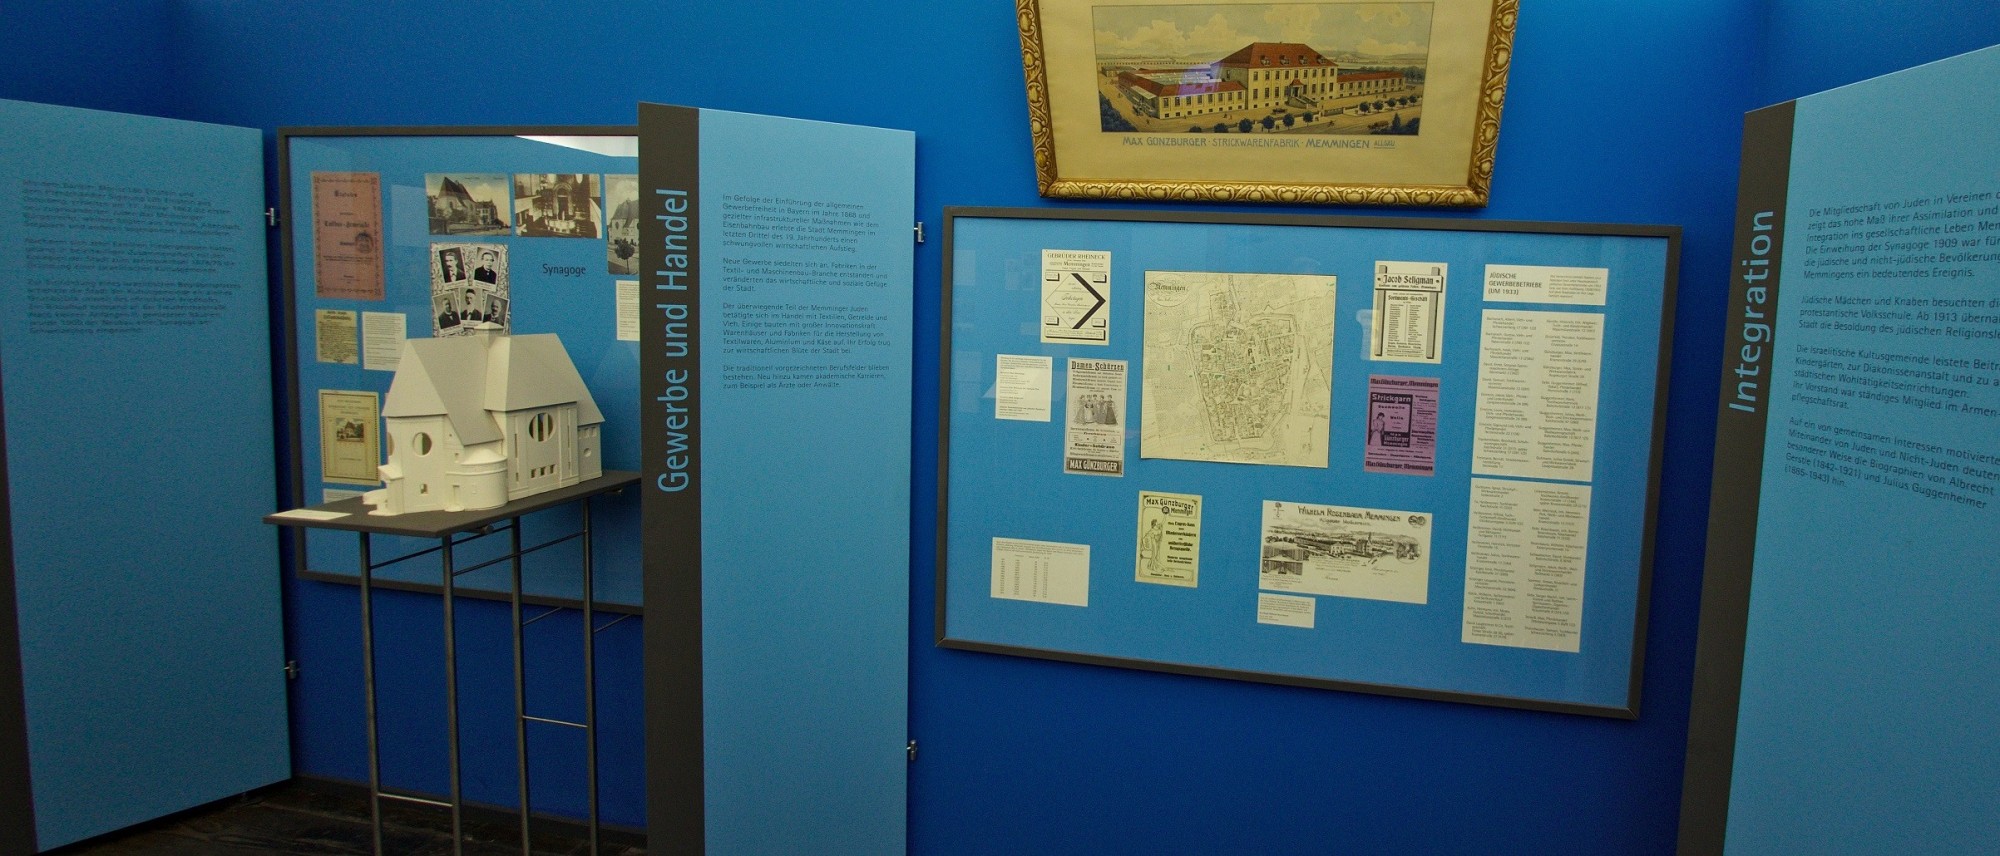 Teil einer Ausstellung zum Jüdischen Leben in Memmingen mit archivalischen Dokumenten und einem Synagogenmodell. Führt zur Unterseite &quot;Memmingen&quot;.